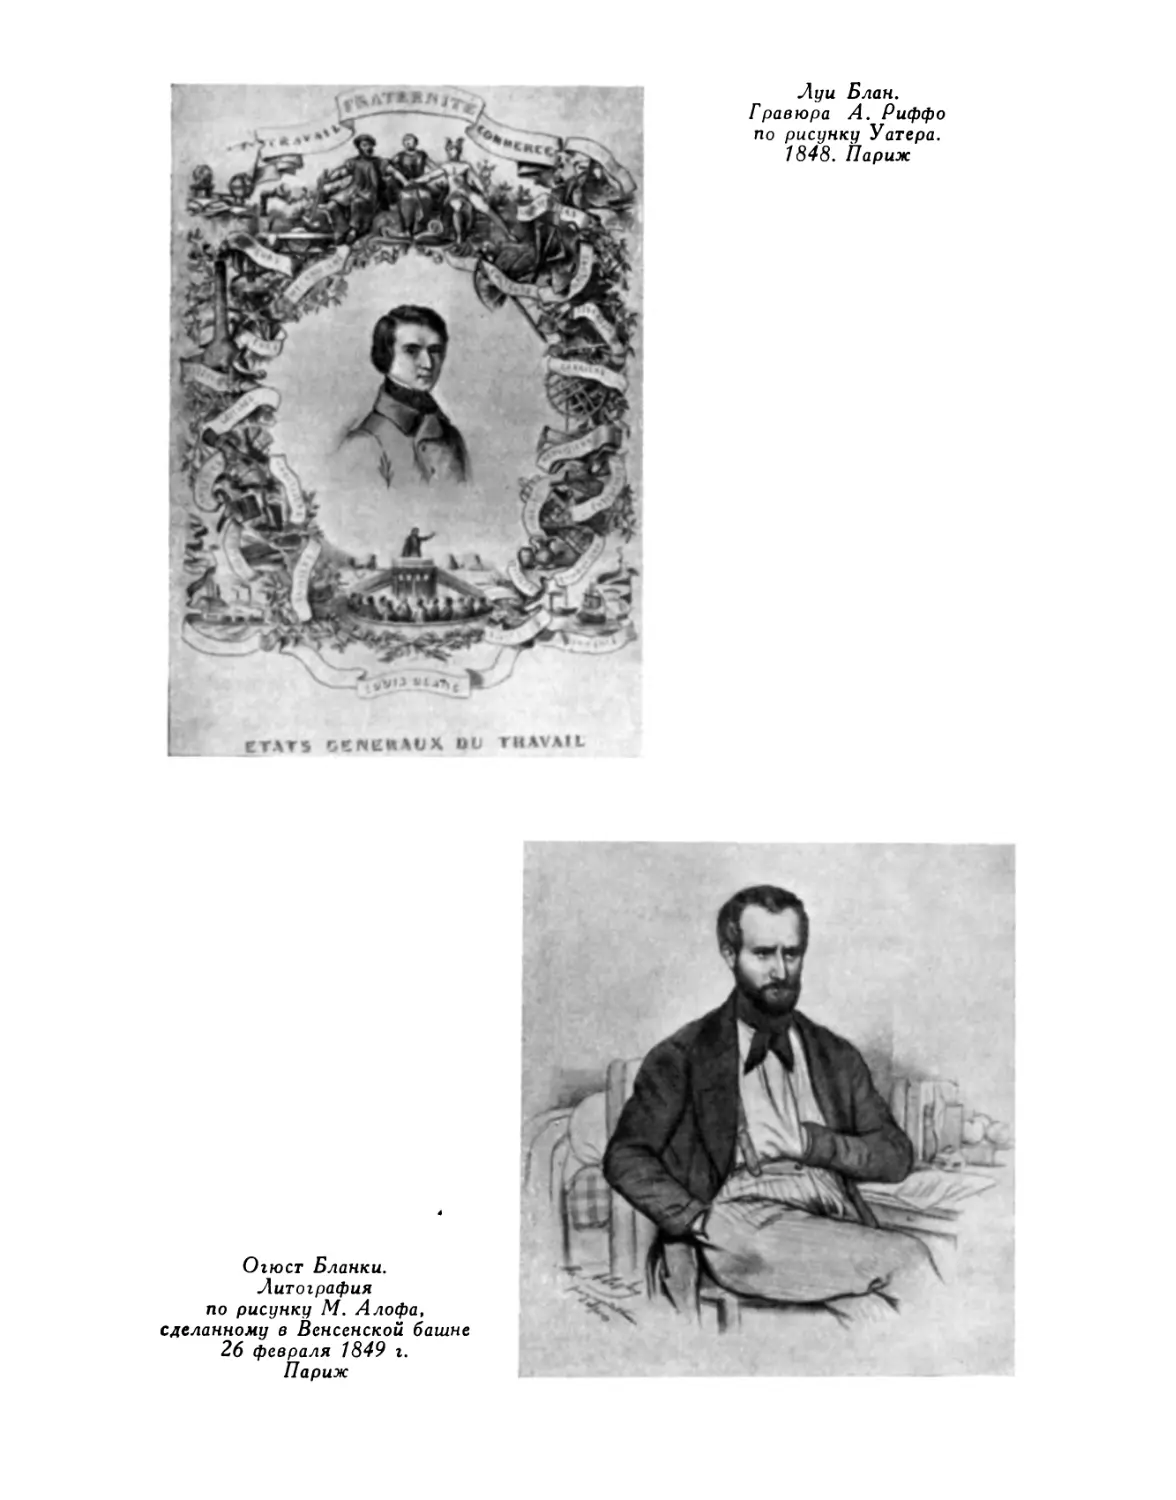 Рашель декламирует «Марсельезу». Обложка нотного сборника. 1848